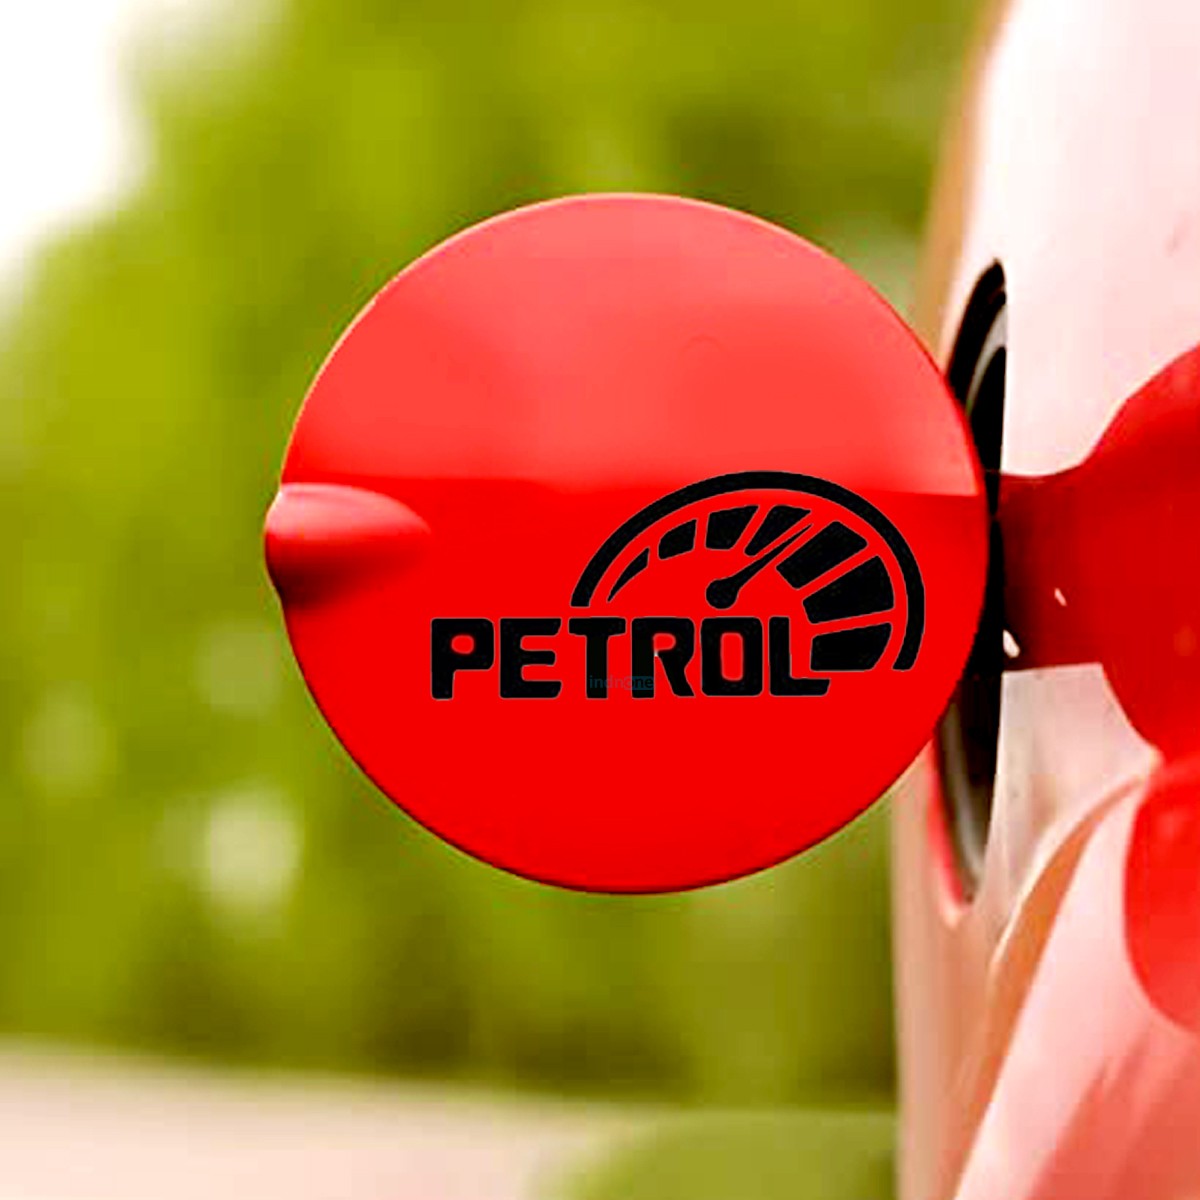 Petrol Fuel Tank Door Sticker. – Fleek